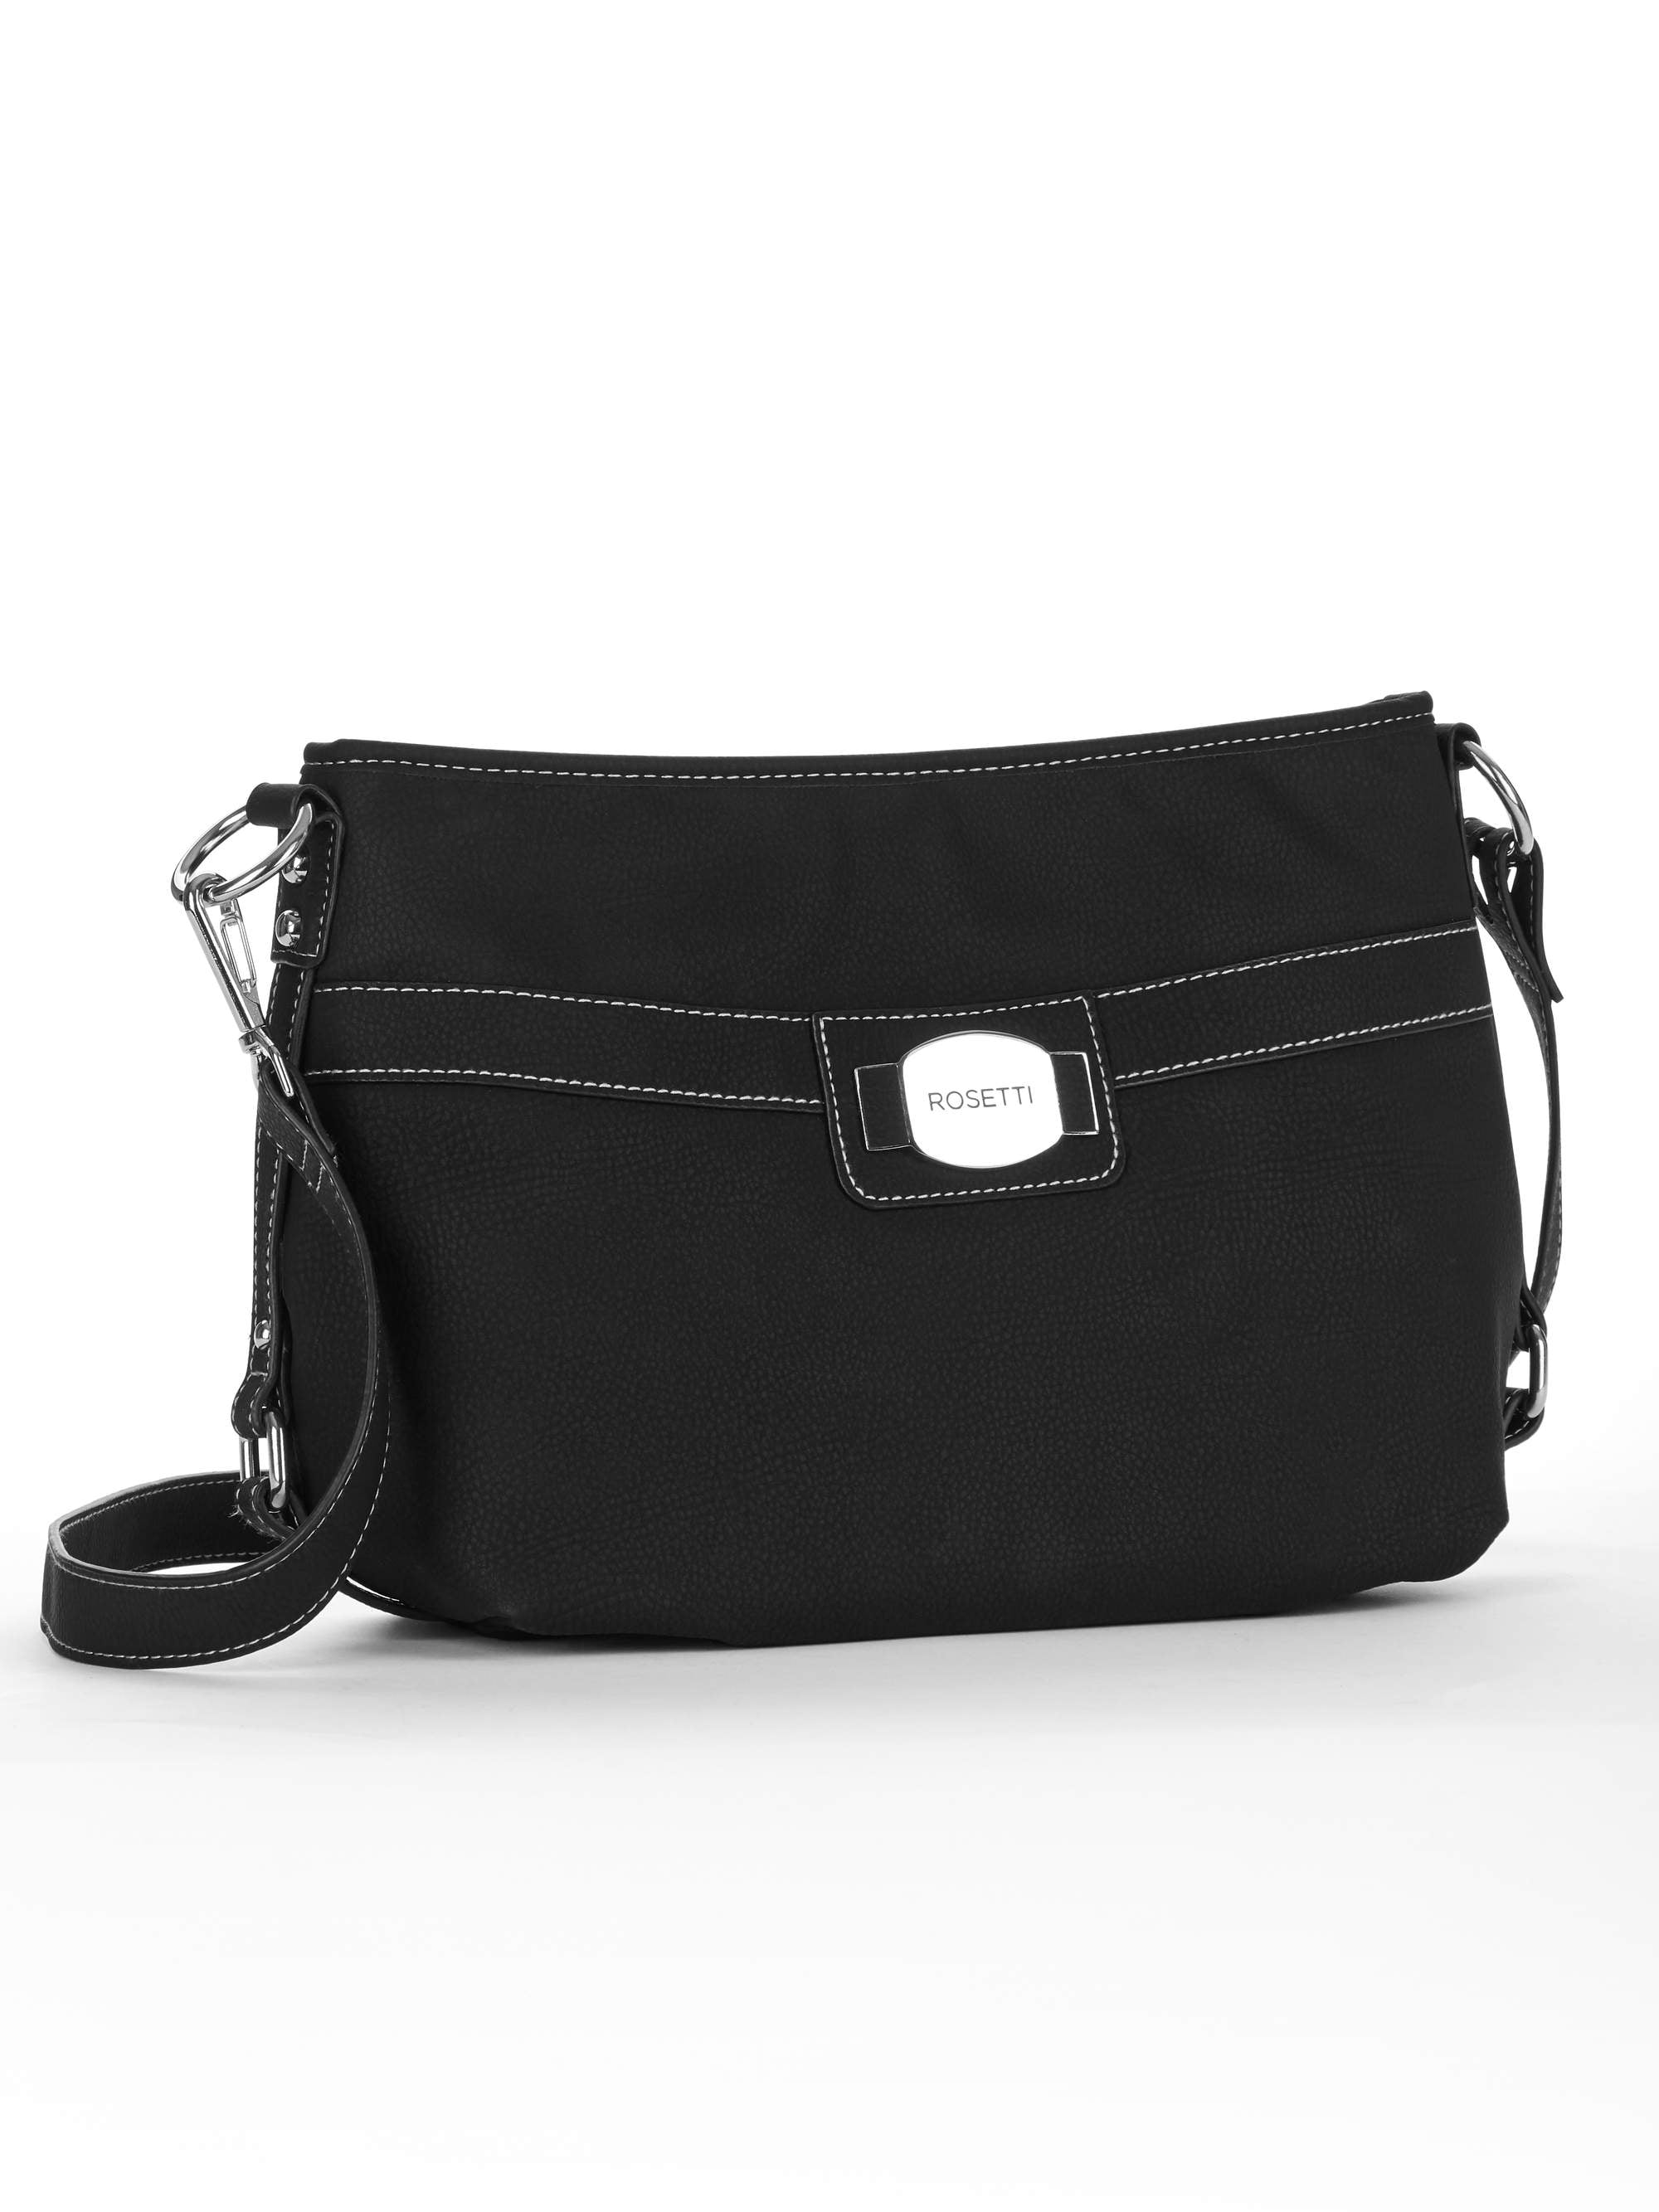 Rosetti Brown Shoulder Bag. | Brown shoulder bag, Bags, Shoulder bag